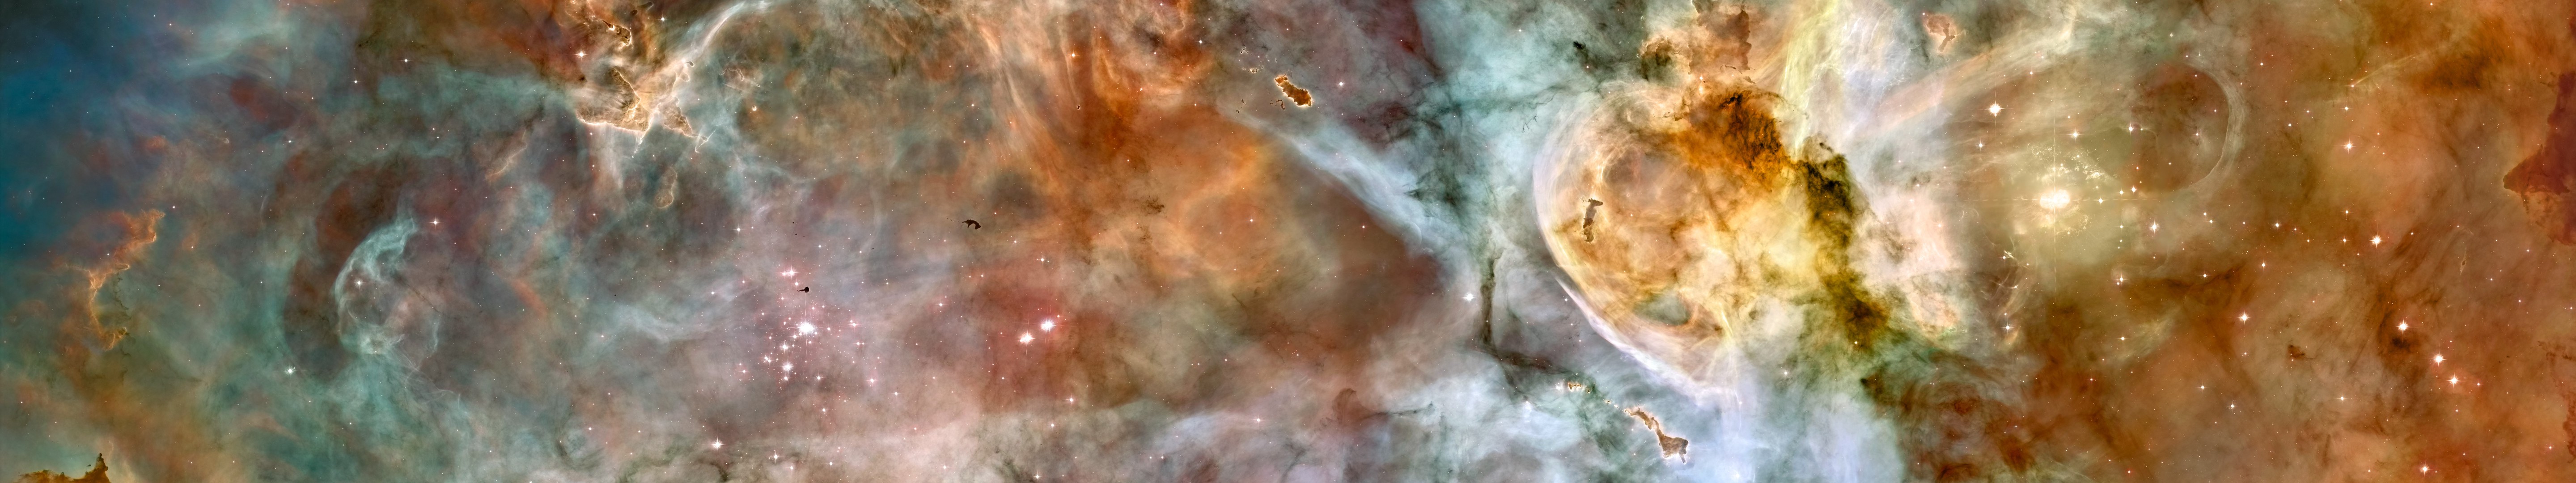 space, Triple Screen, Multiple Display, Hubble Deep Field, Stars, Galaxy Wallpaper